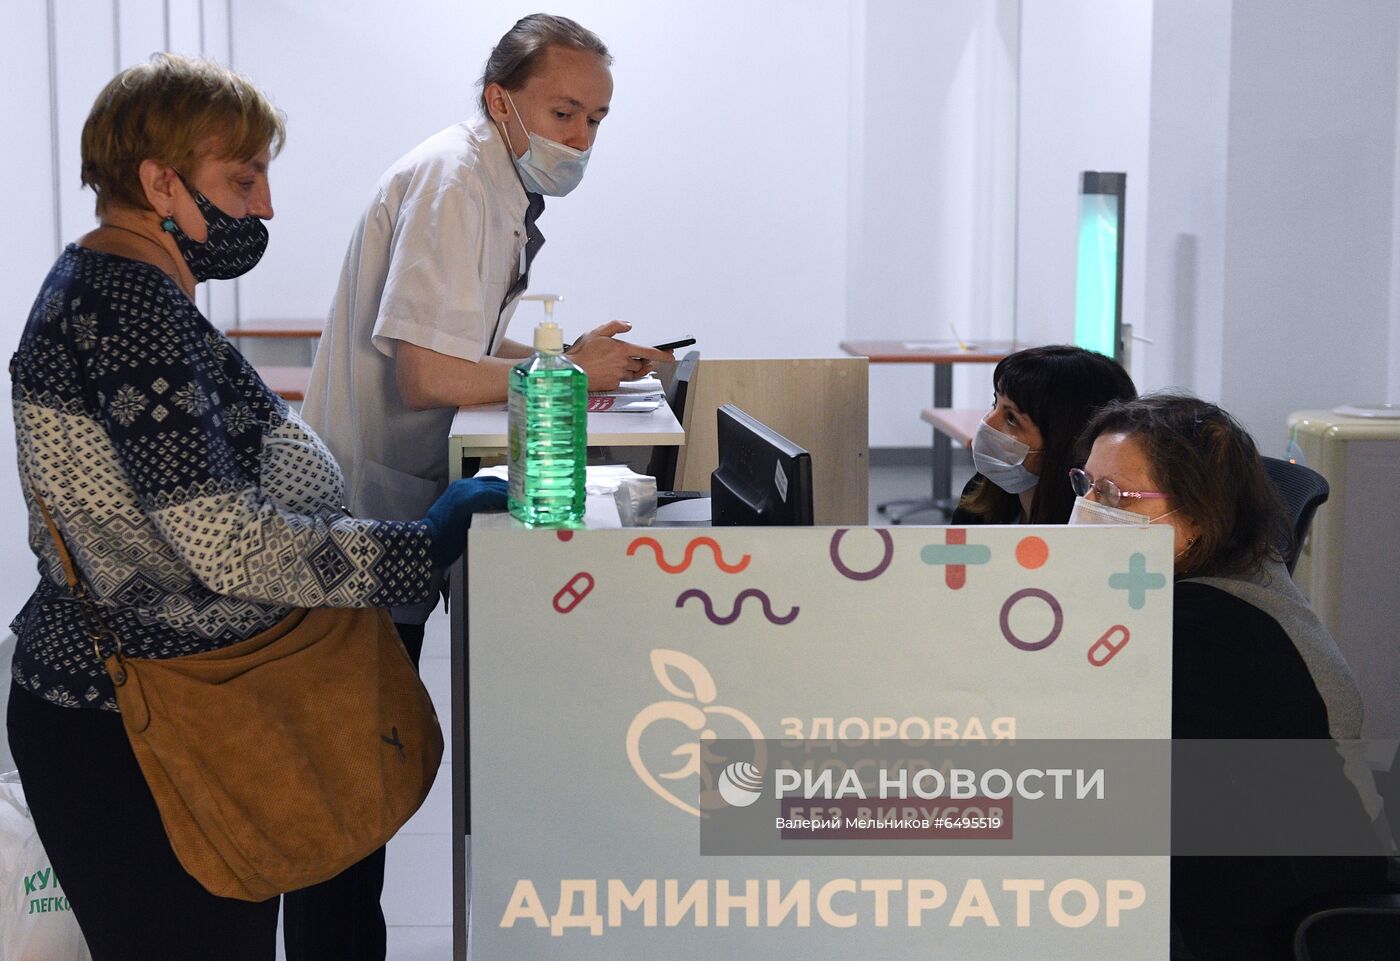 Пункт вакцинации от COVID-19 в ТЦ "Ереван Плаза"